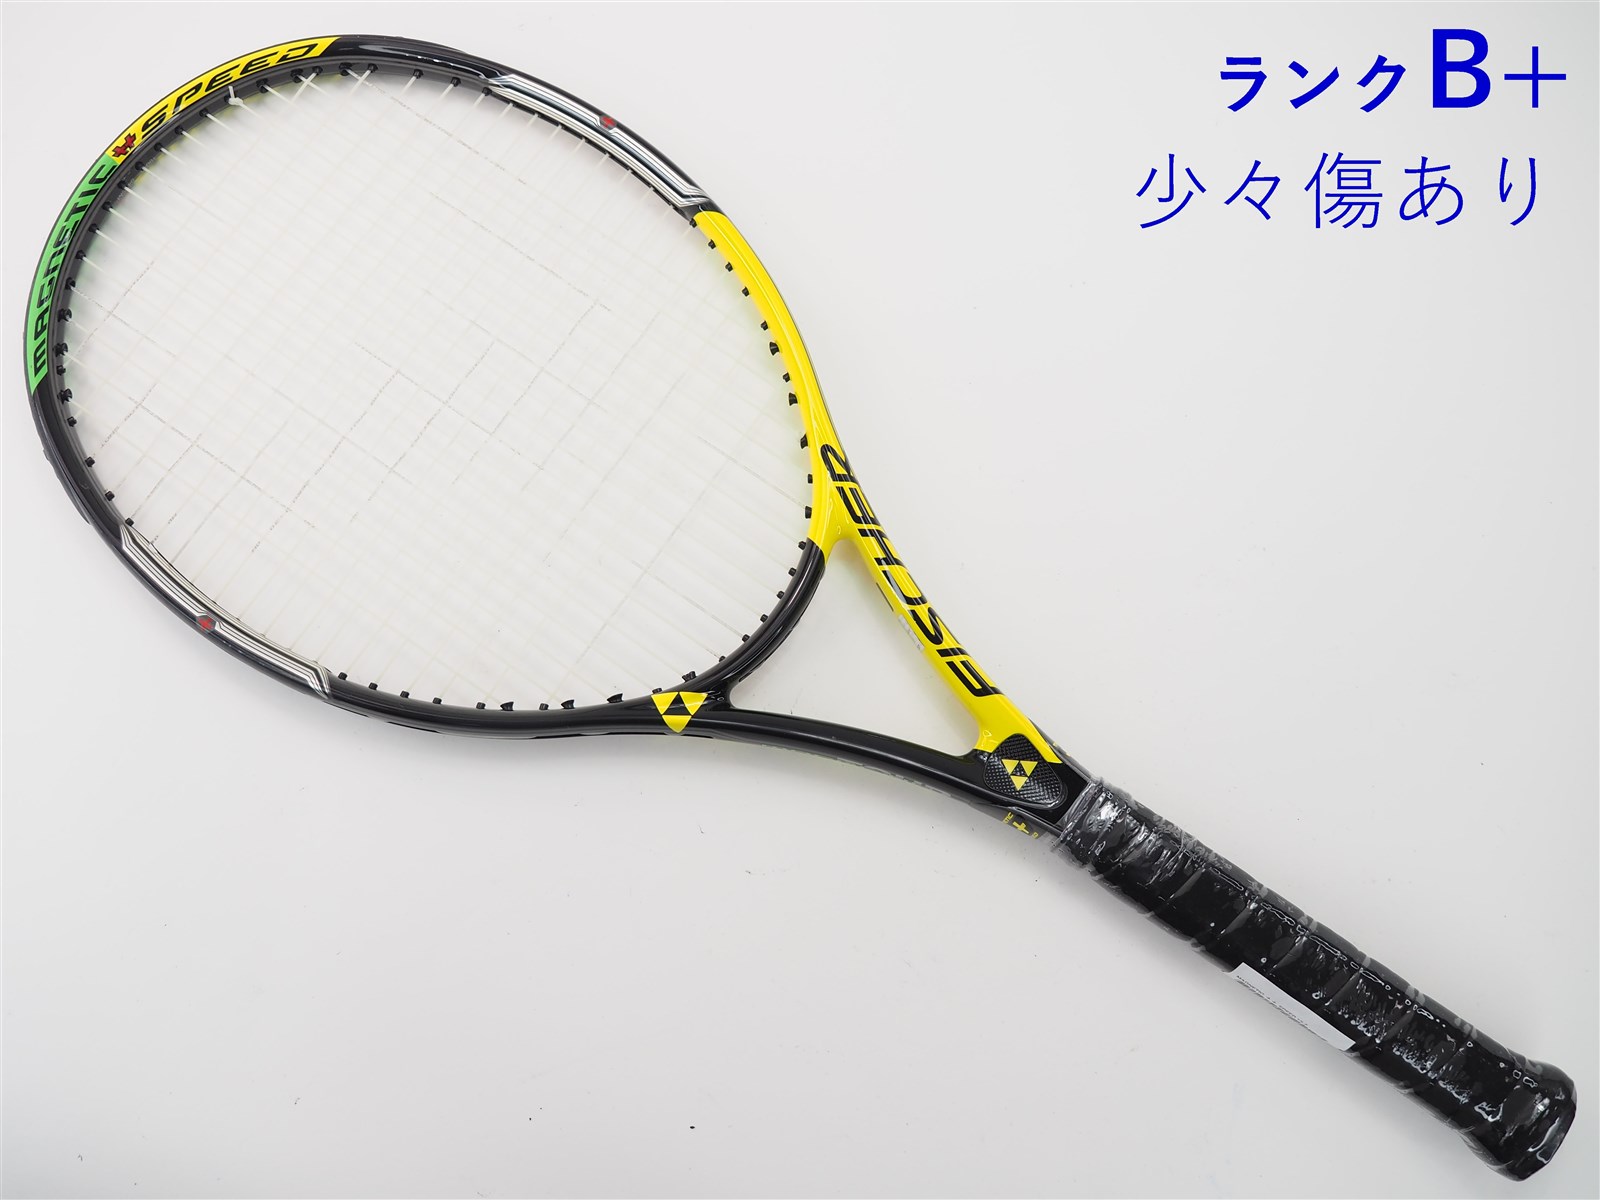 270インチフレーム厚テニスラケット フィッシャー マグネチック プラス